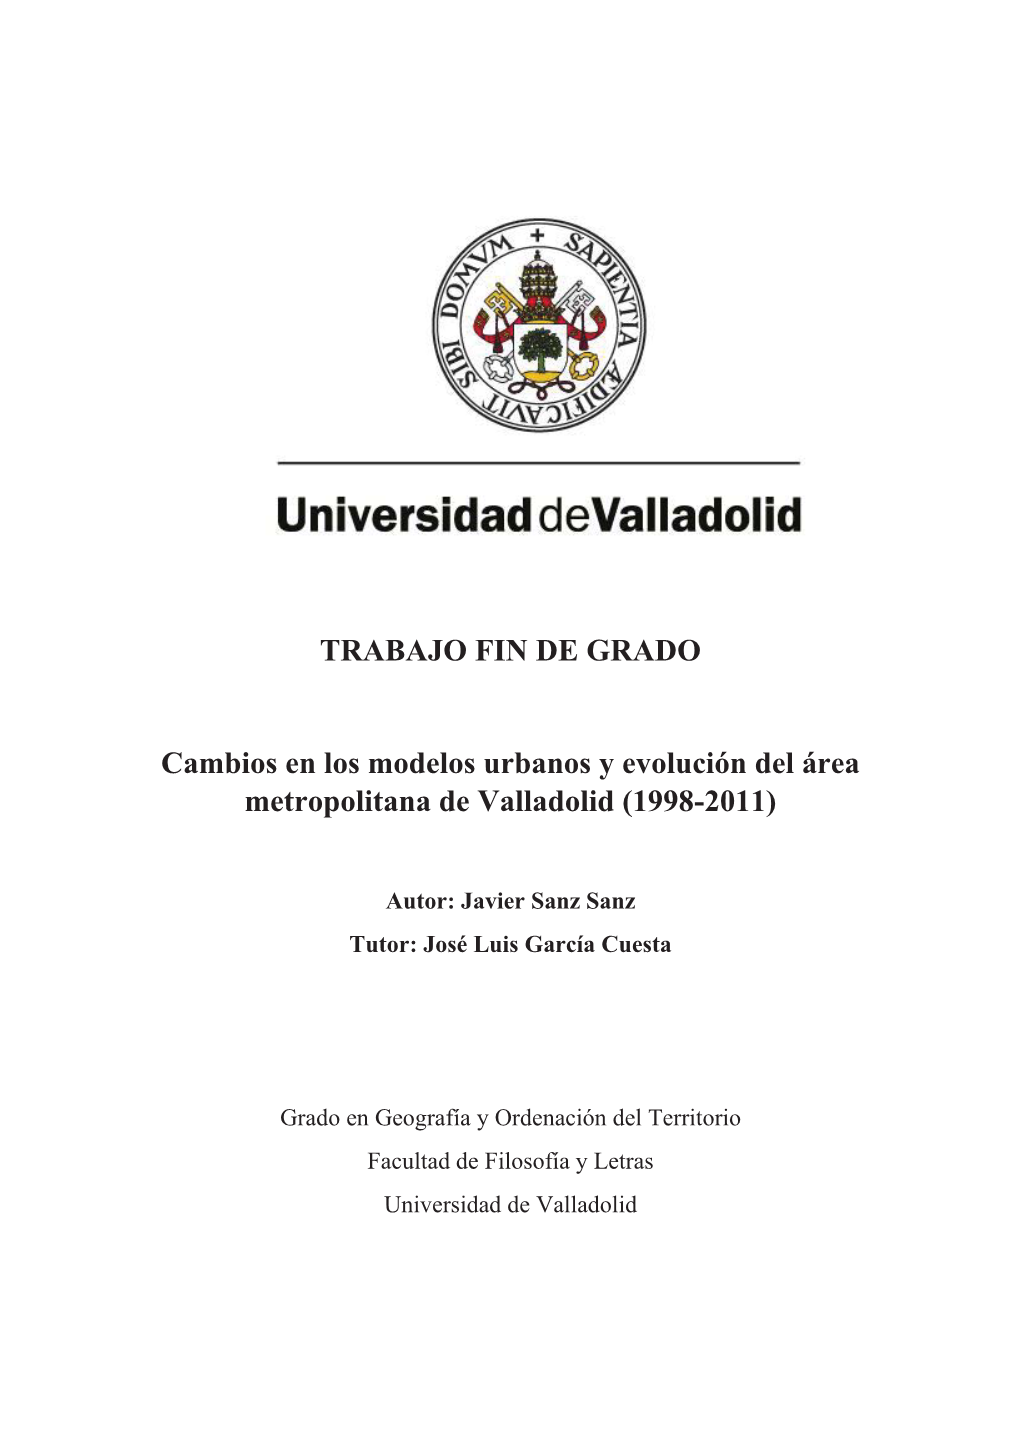 TRABAJO FIN DE GRADO Cambios En Los Modelos Urbanos Y Evolución Del Área Metropolitana De Valladolid (1998-2011)